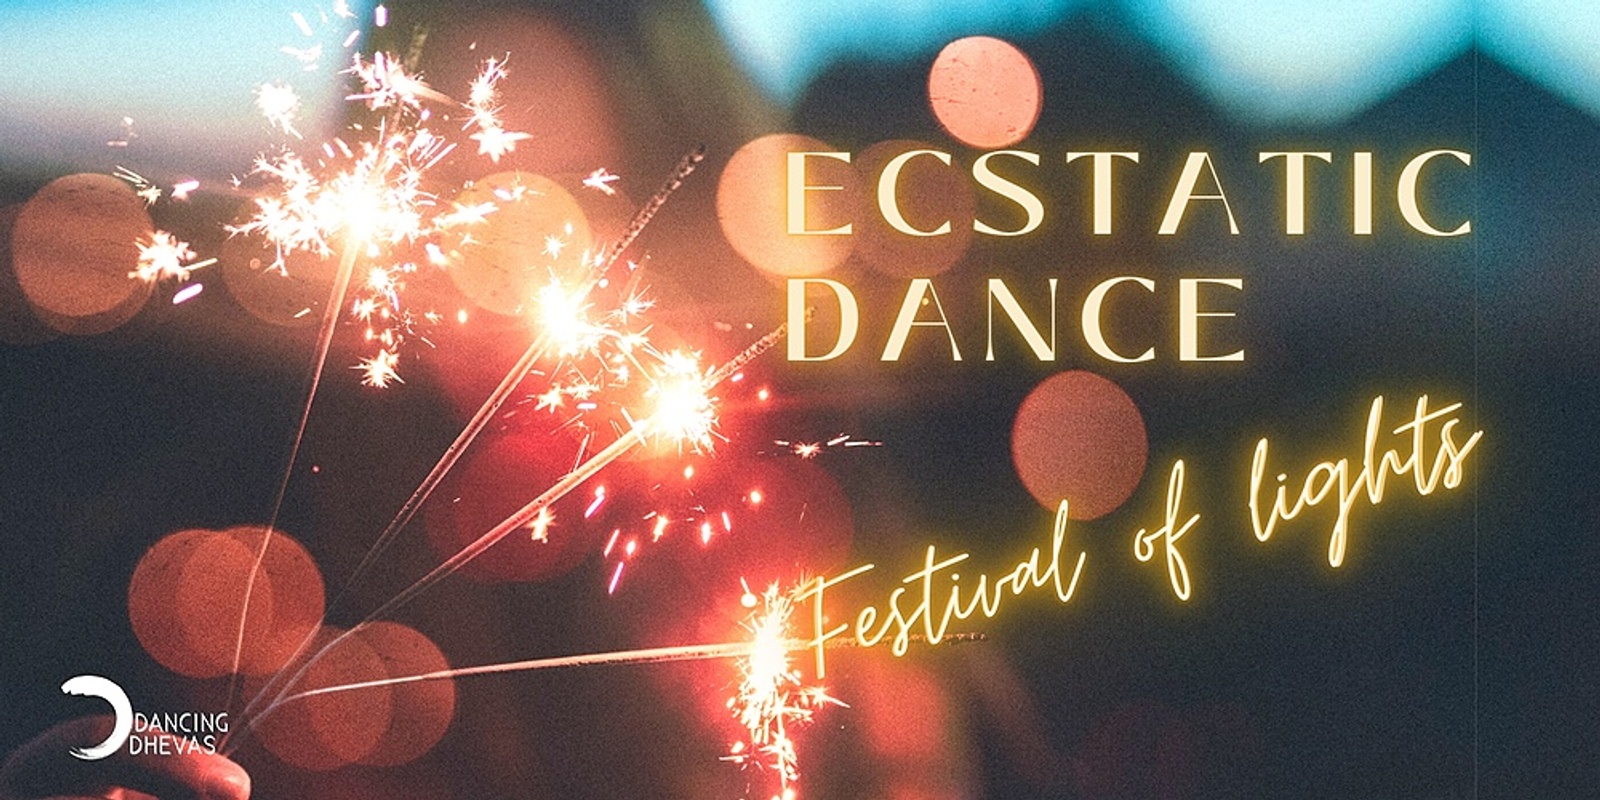 Banner image for Festival of light - Ecstatic Dance